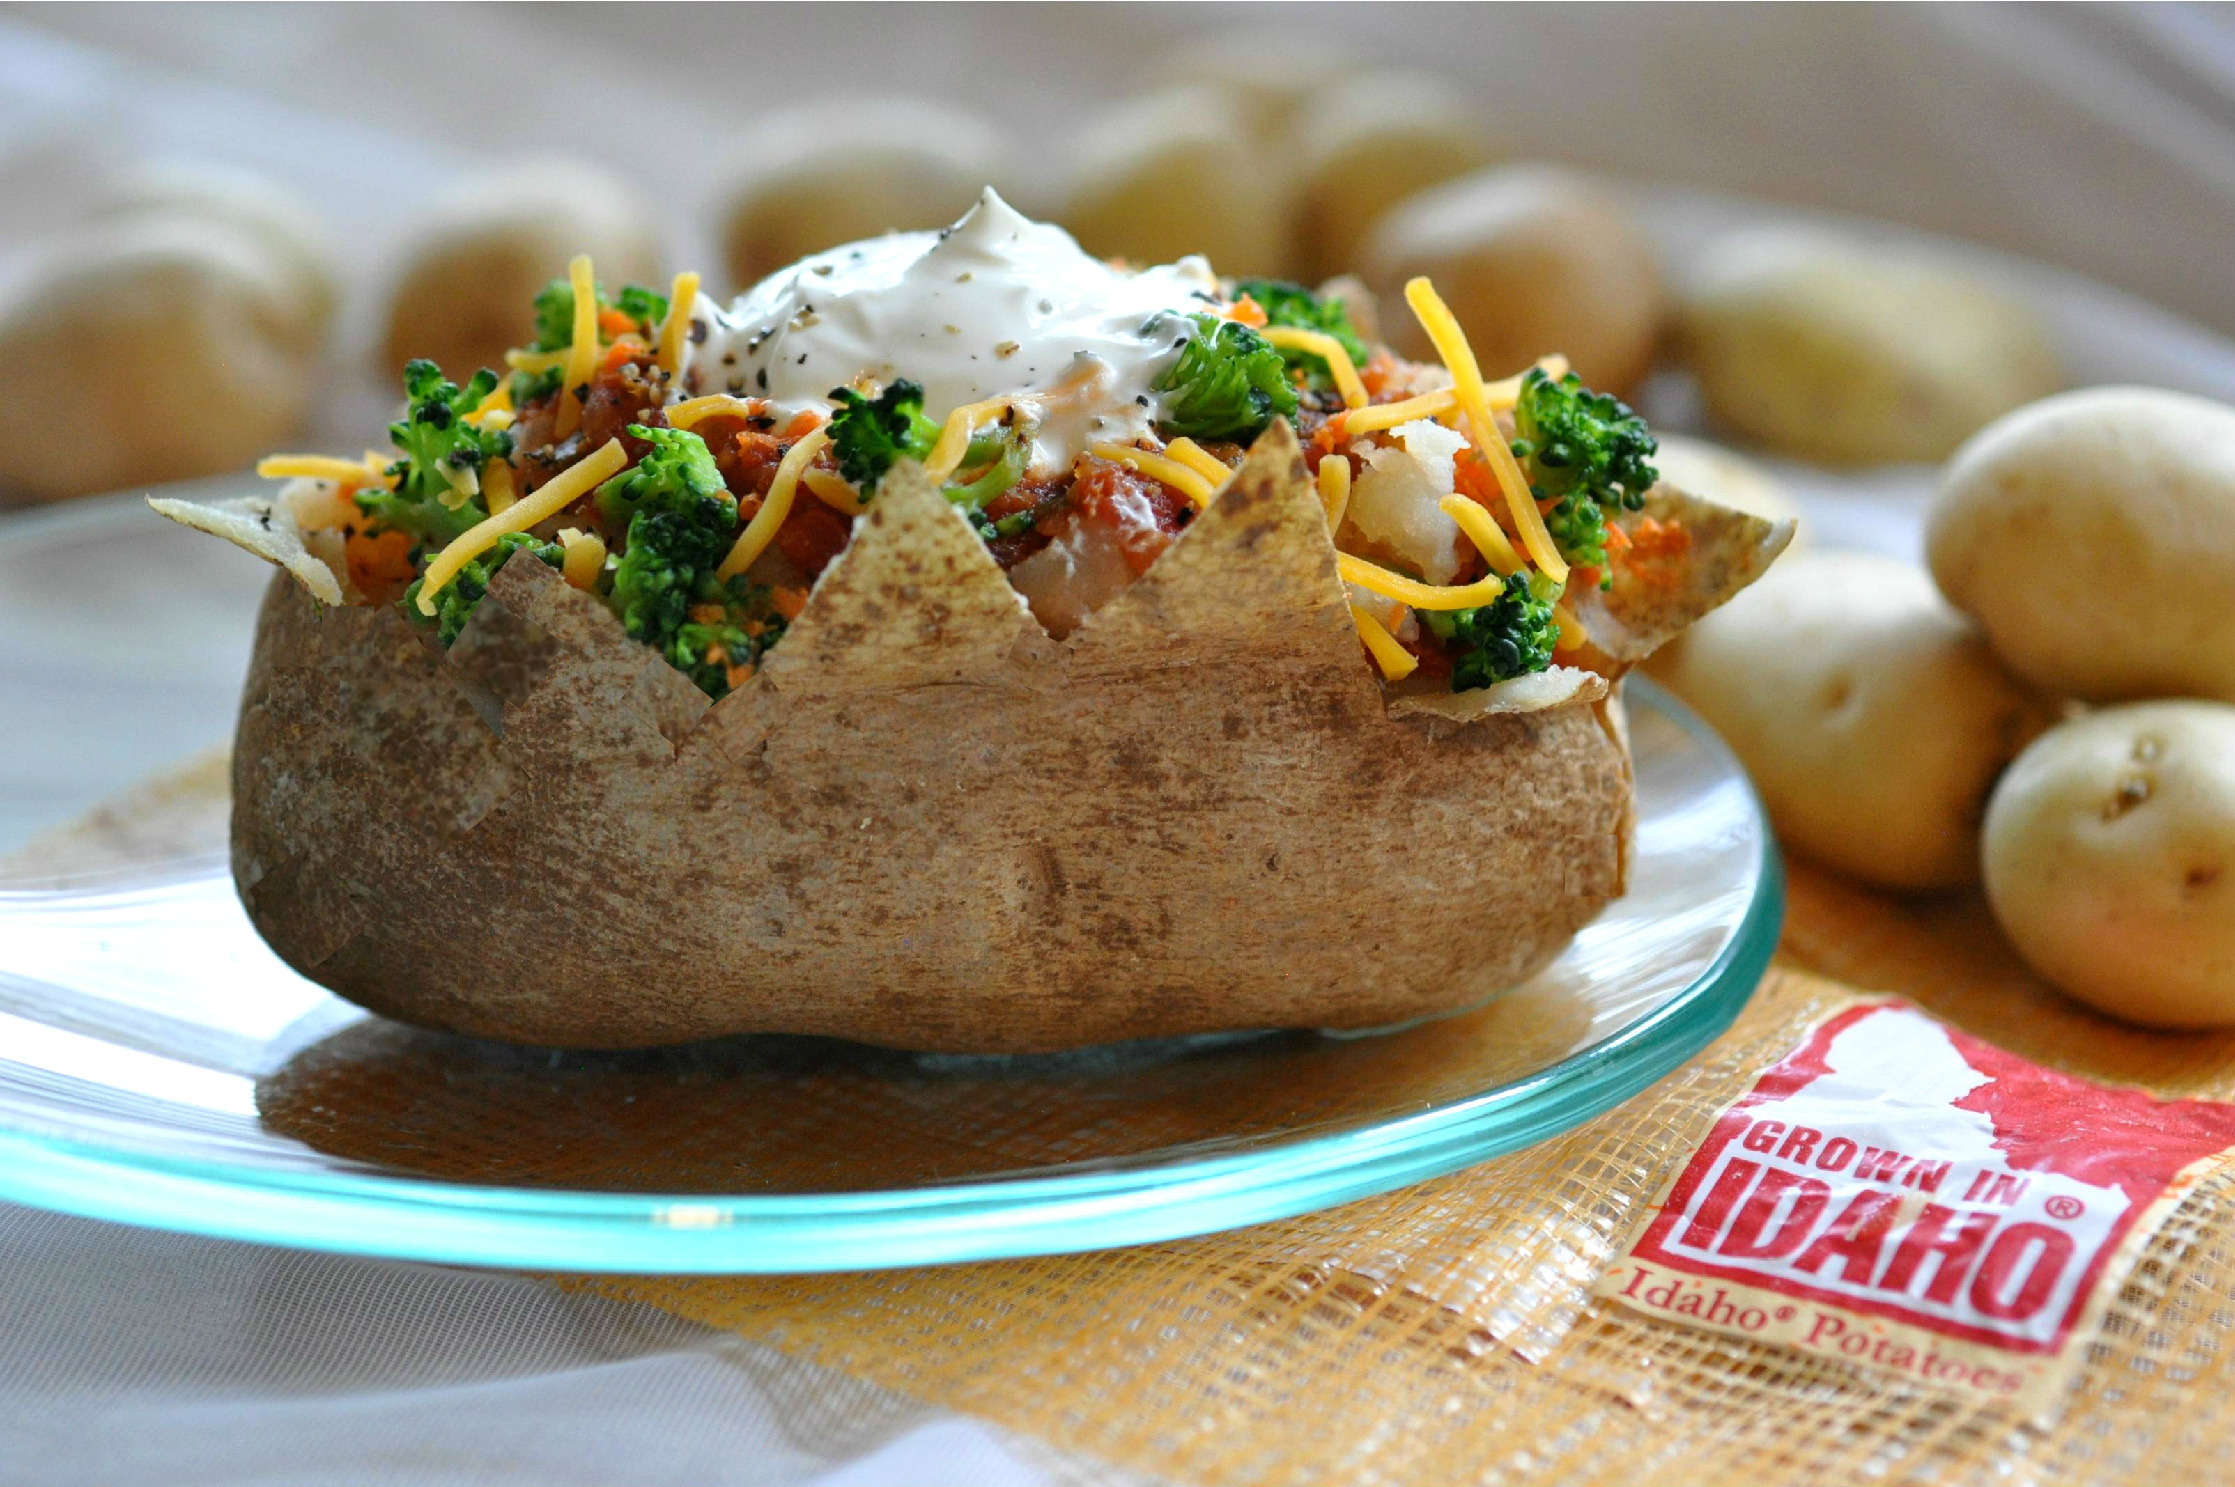 baked-idaho-potato-with-broccoli-and-salsa